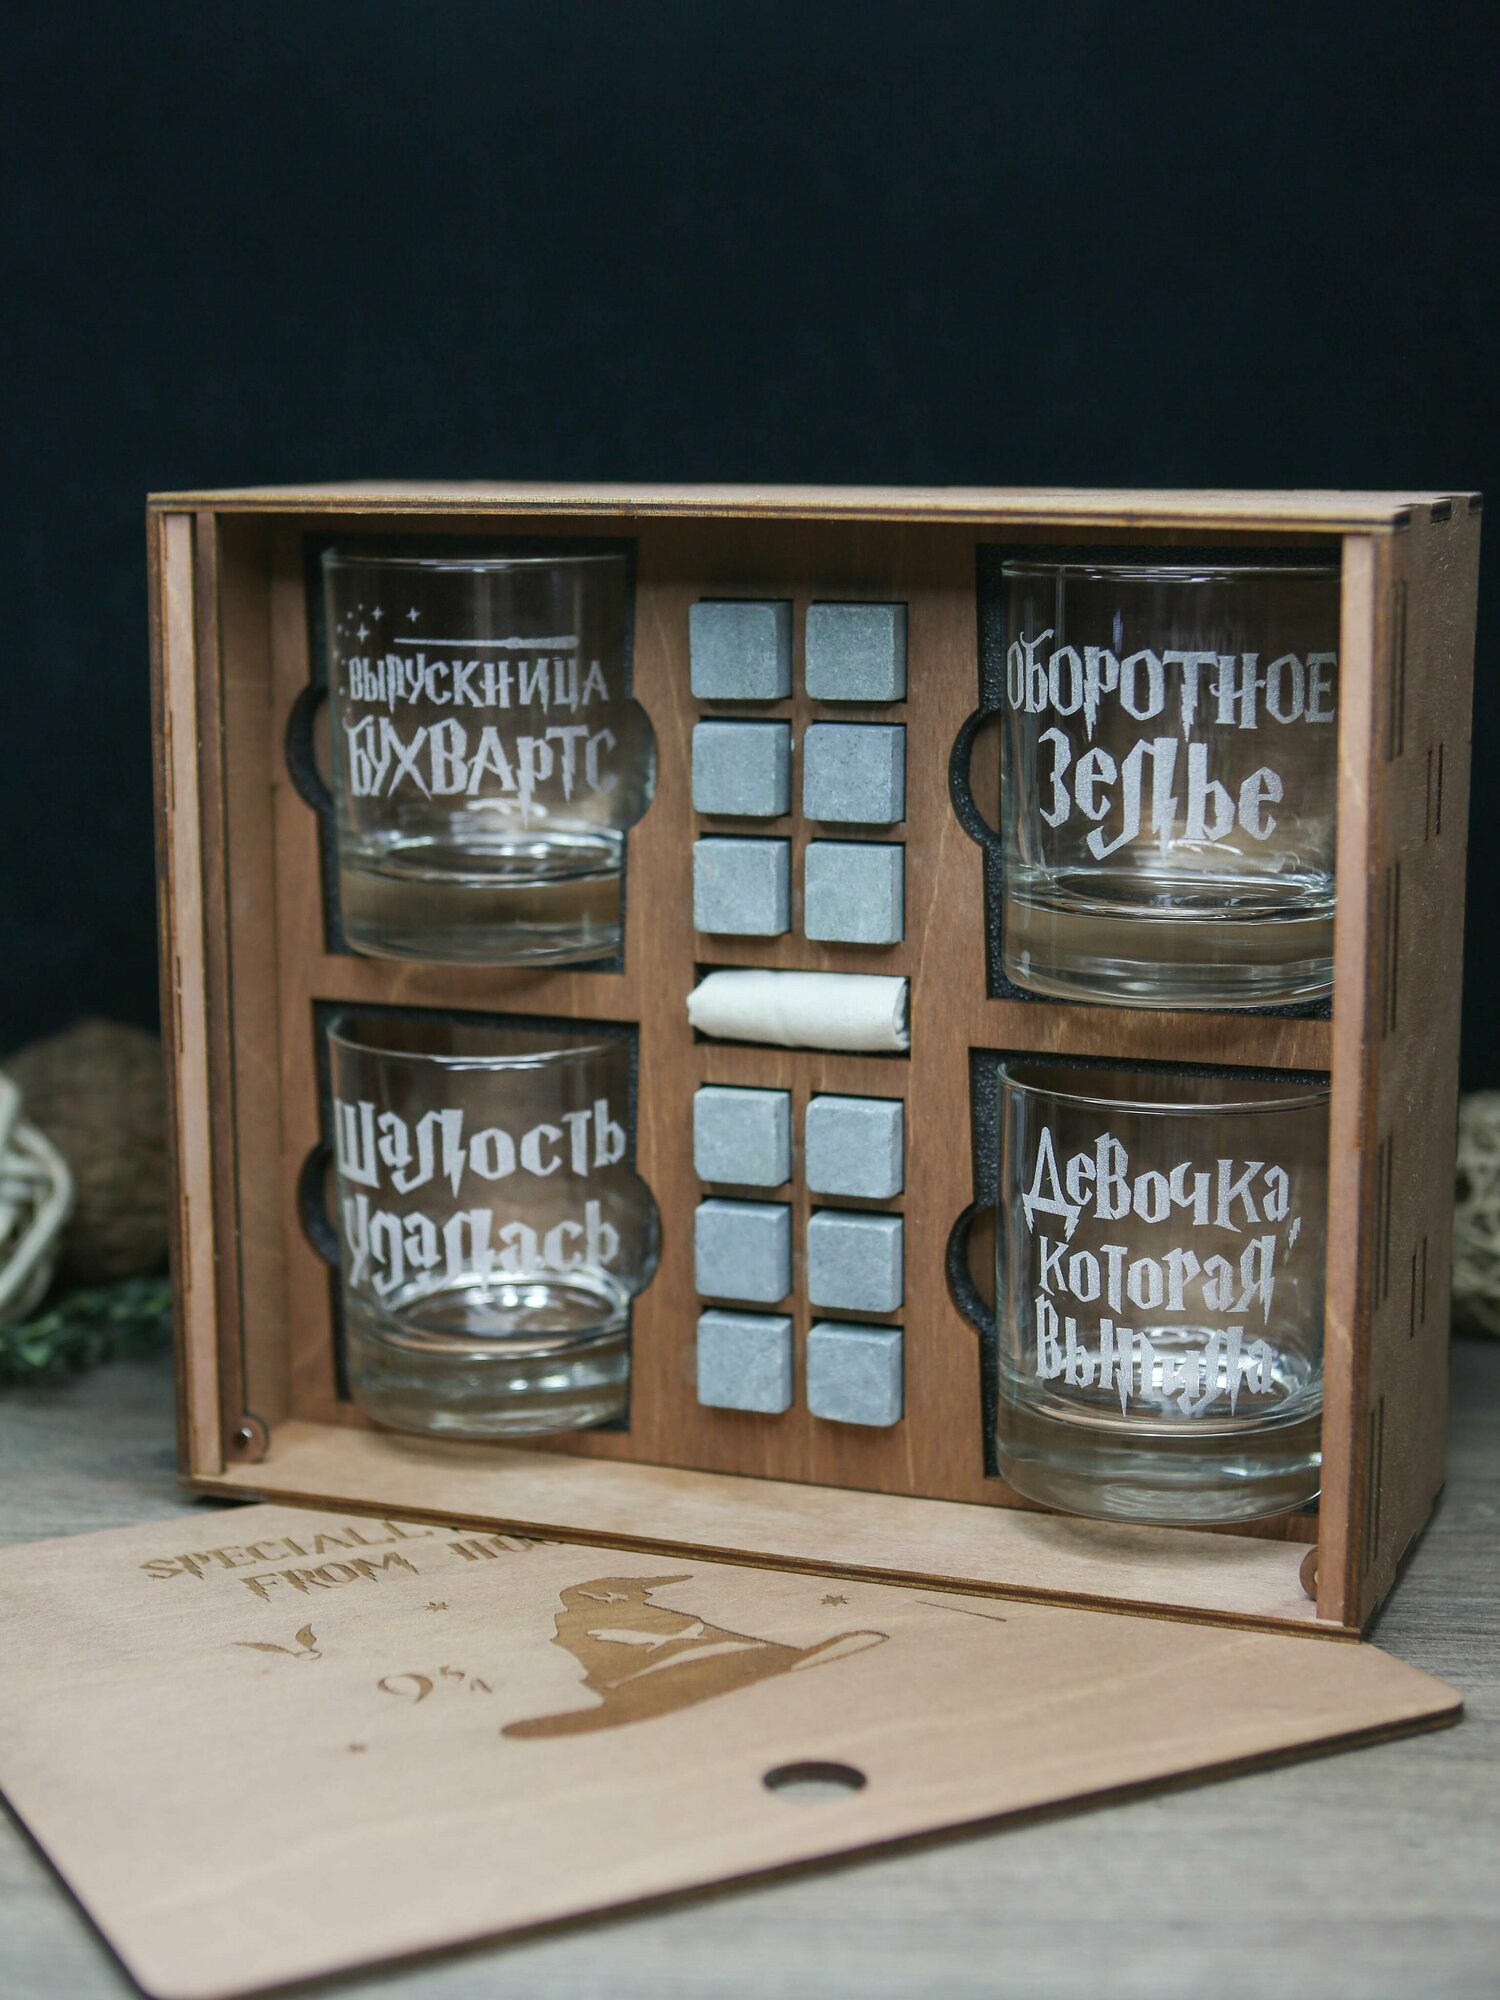 Набор для виски, 4 Стакана с надписью Бухвартс (Девочка) в деревянной коричневой коробке, камни для виски